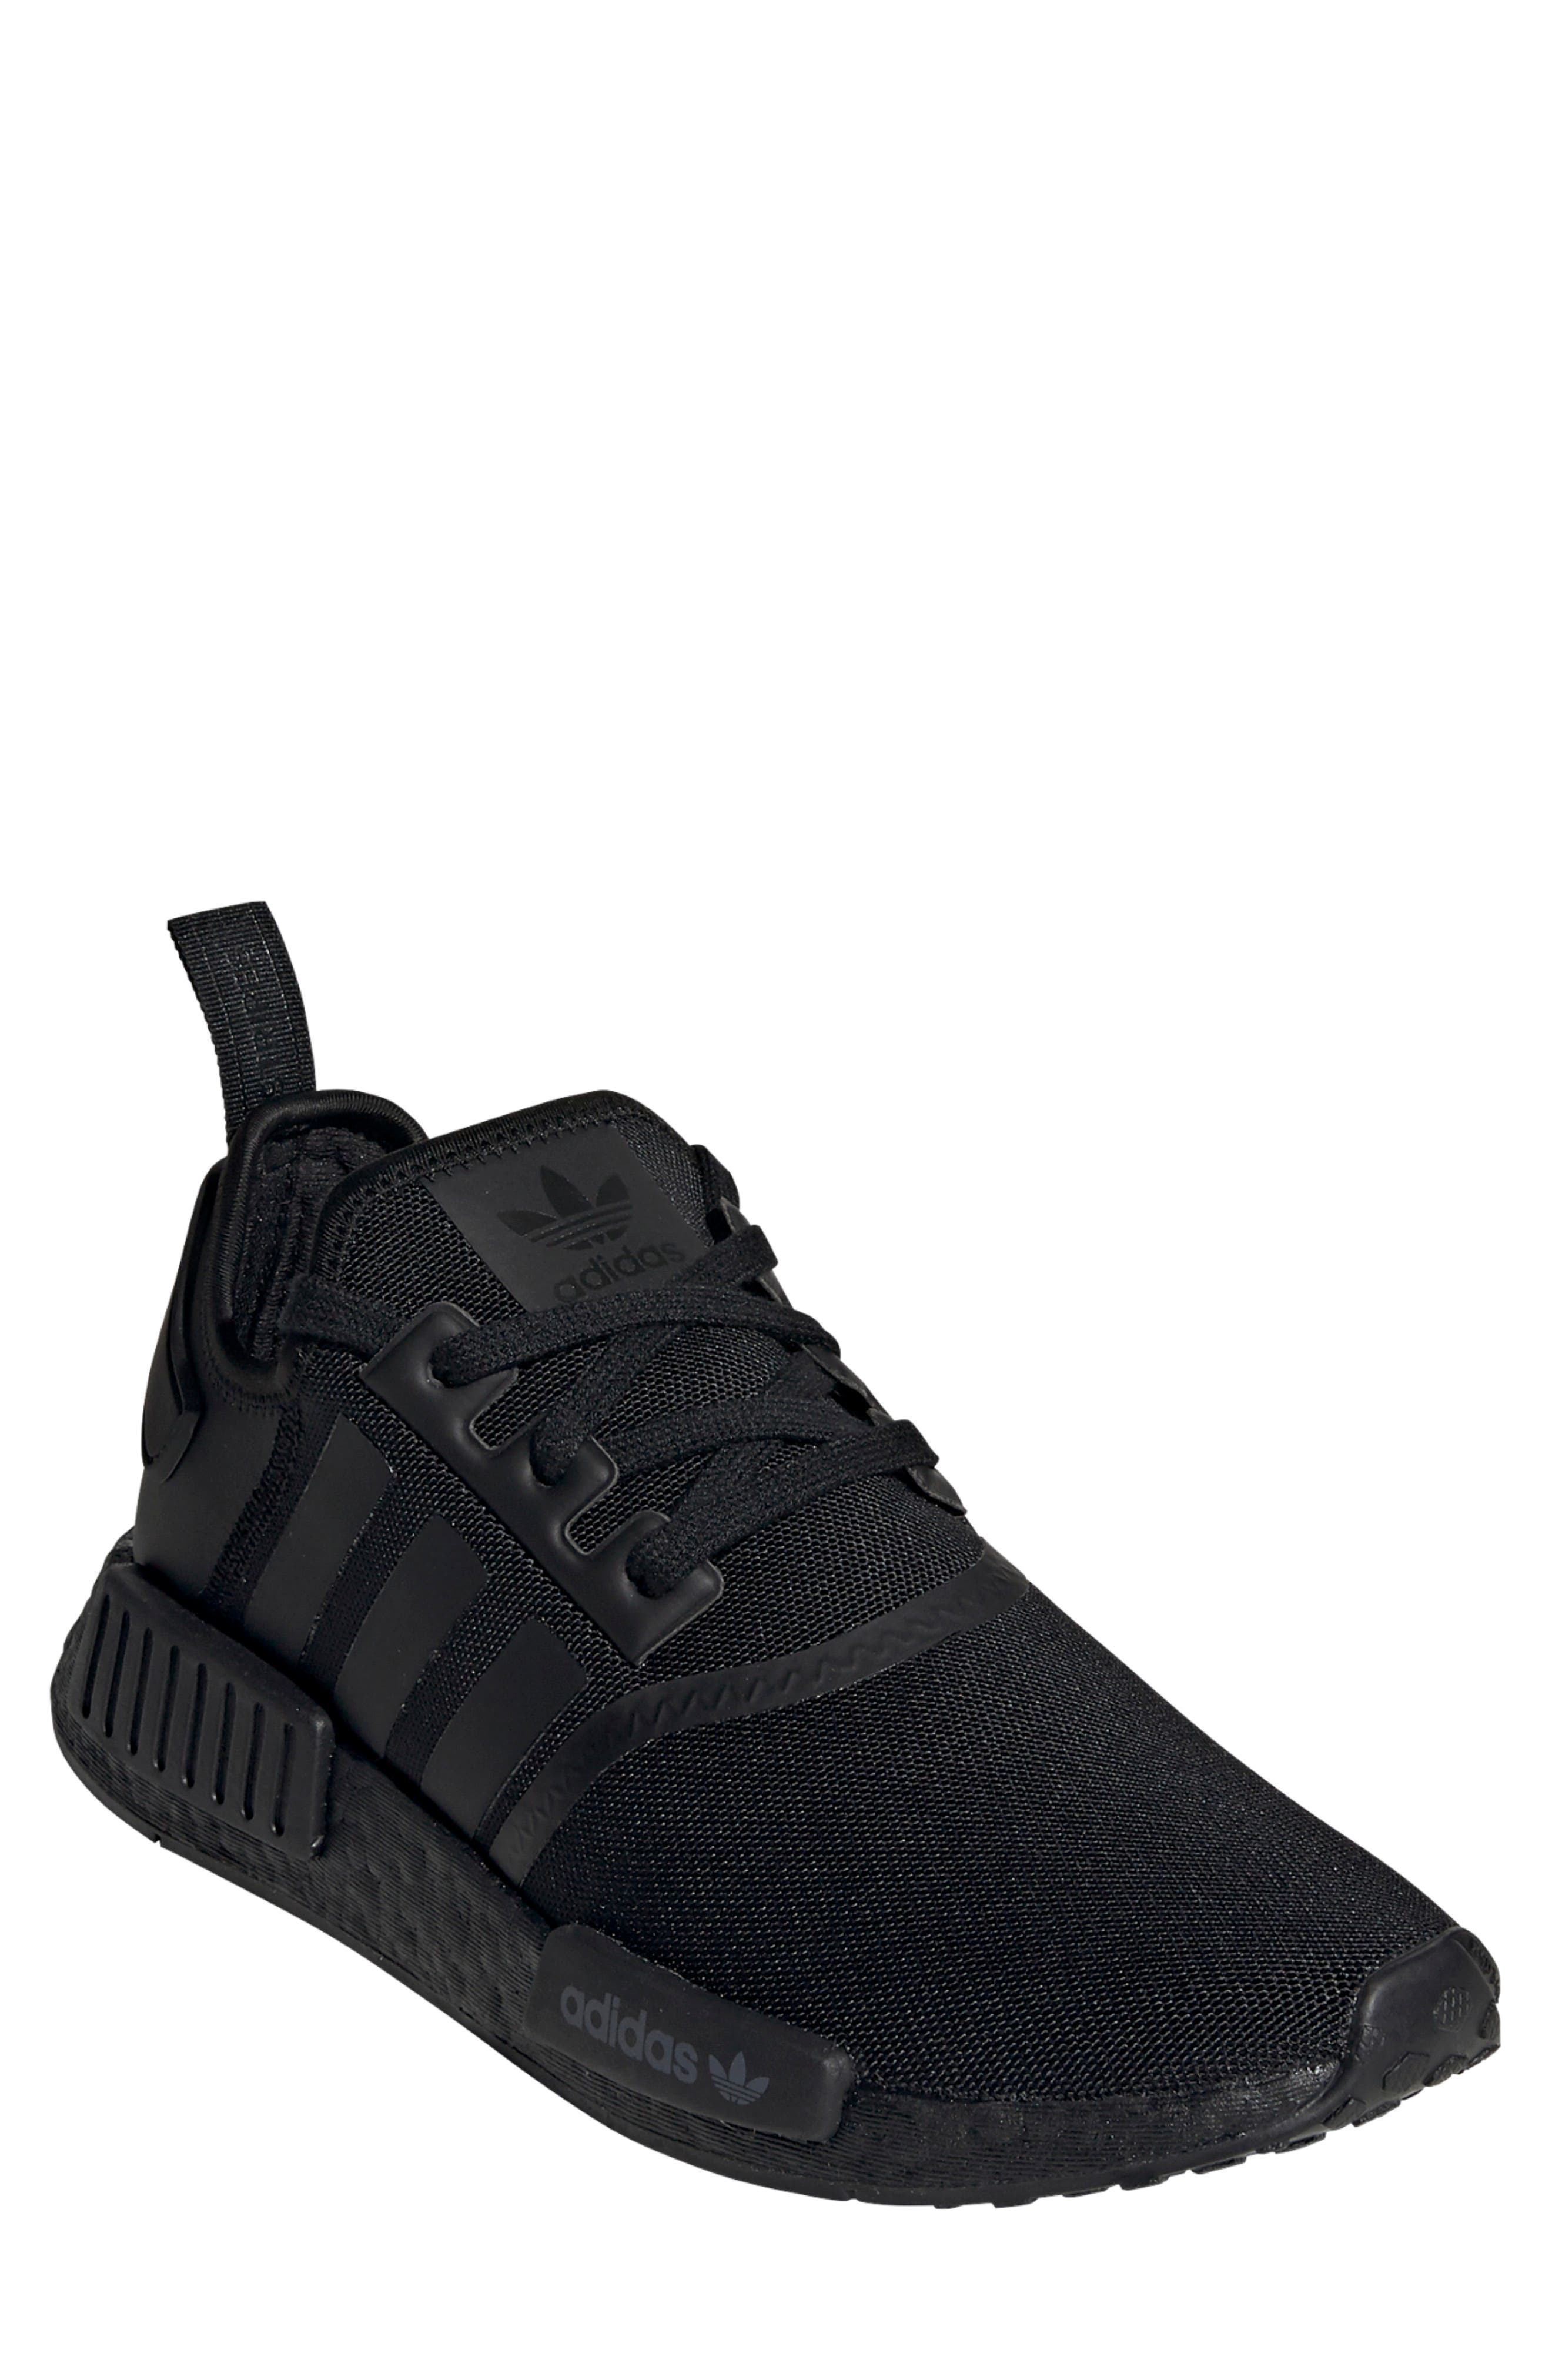 sneakers black